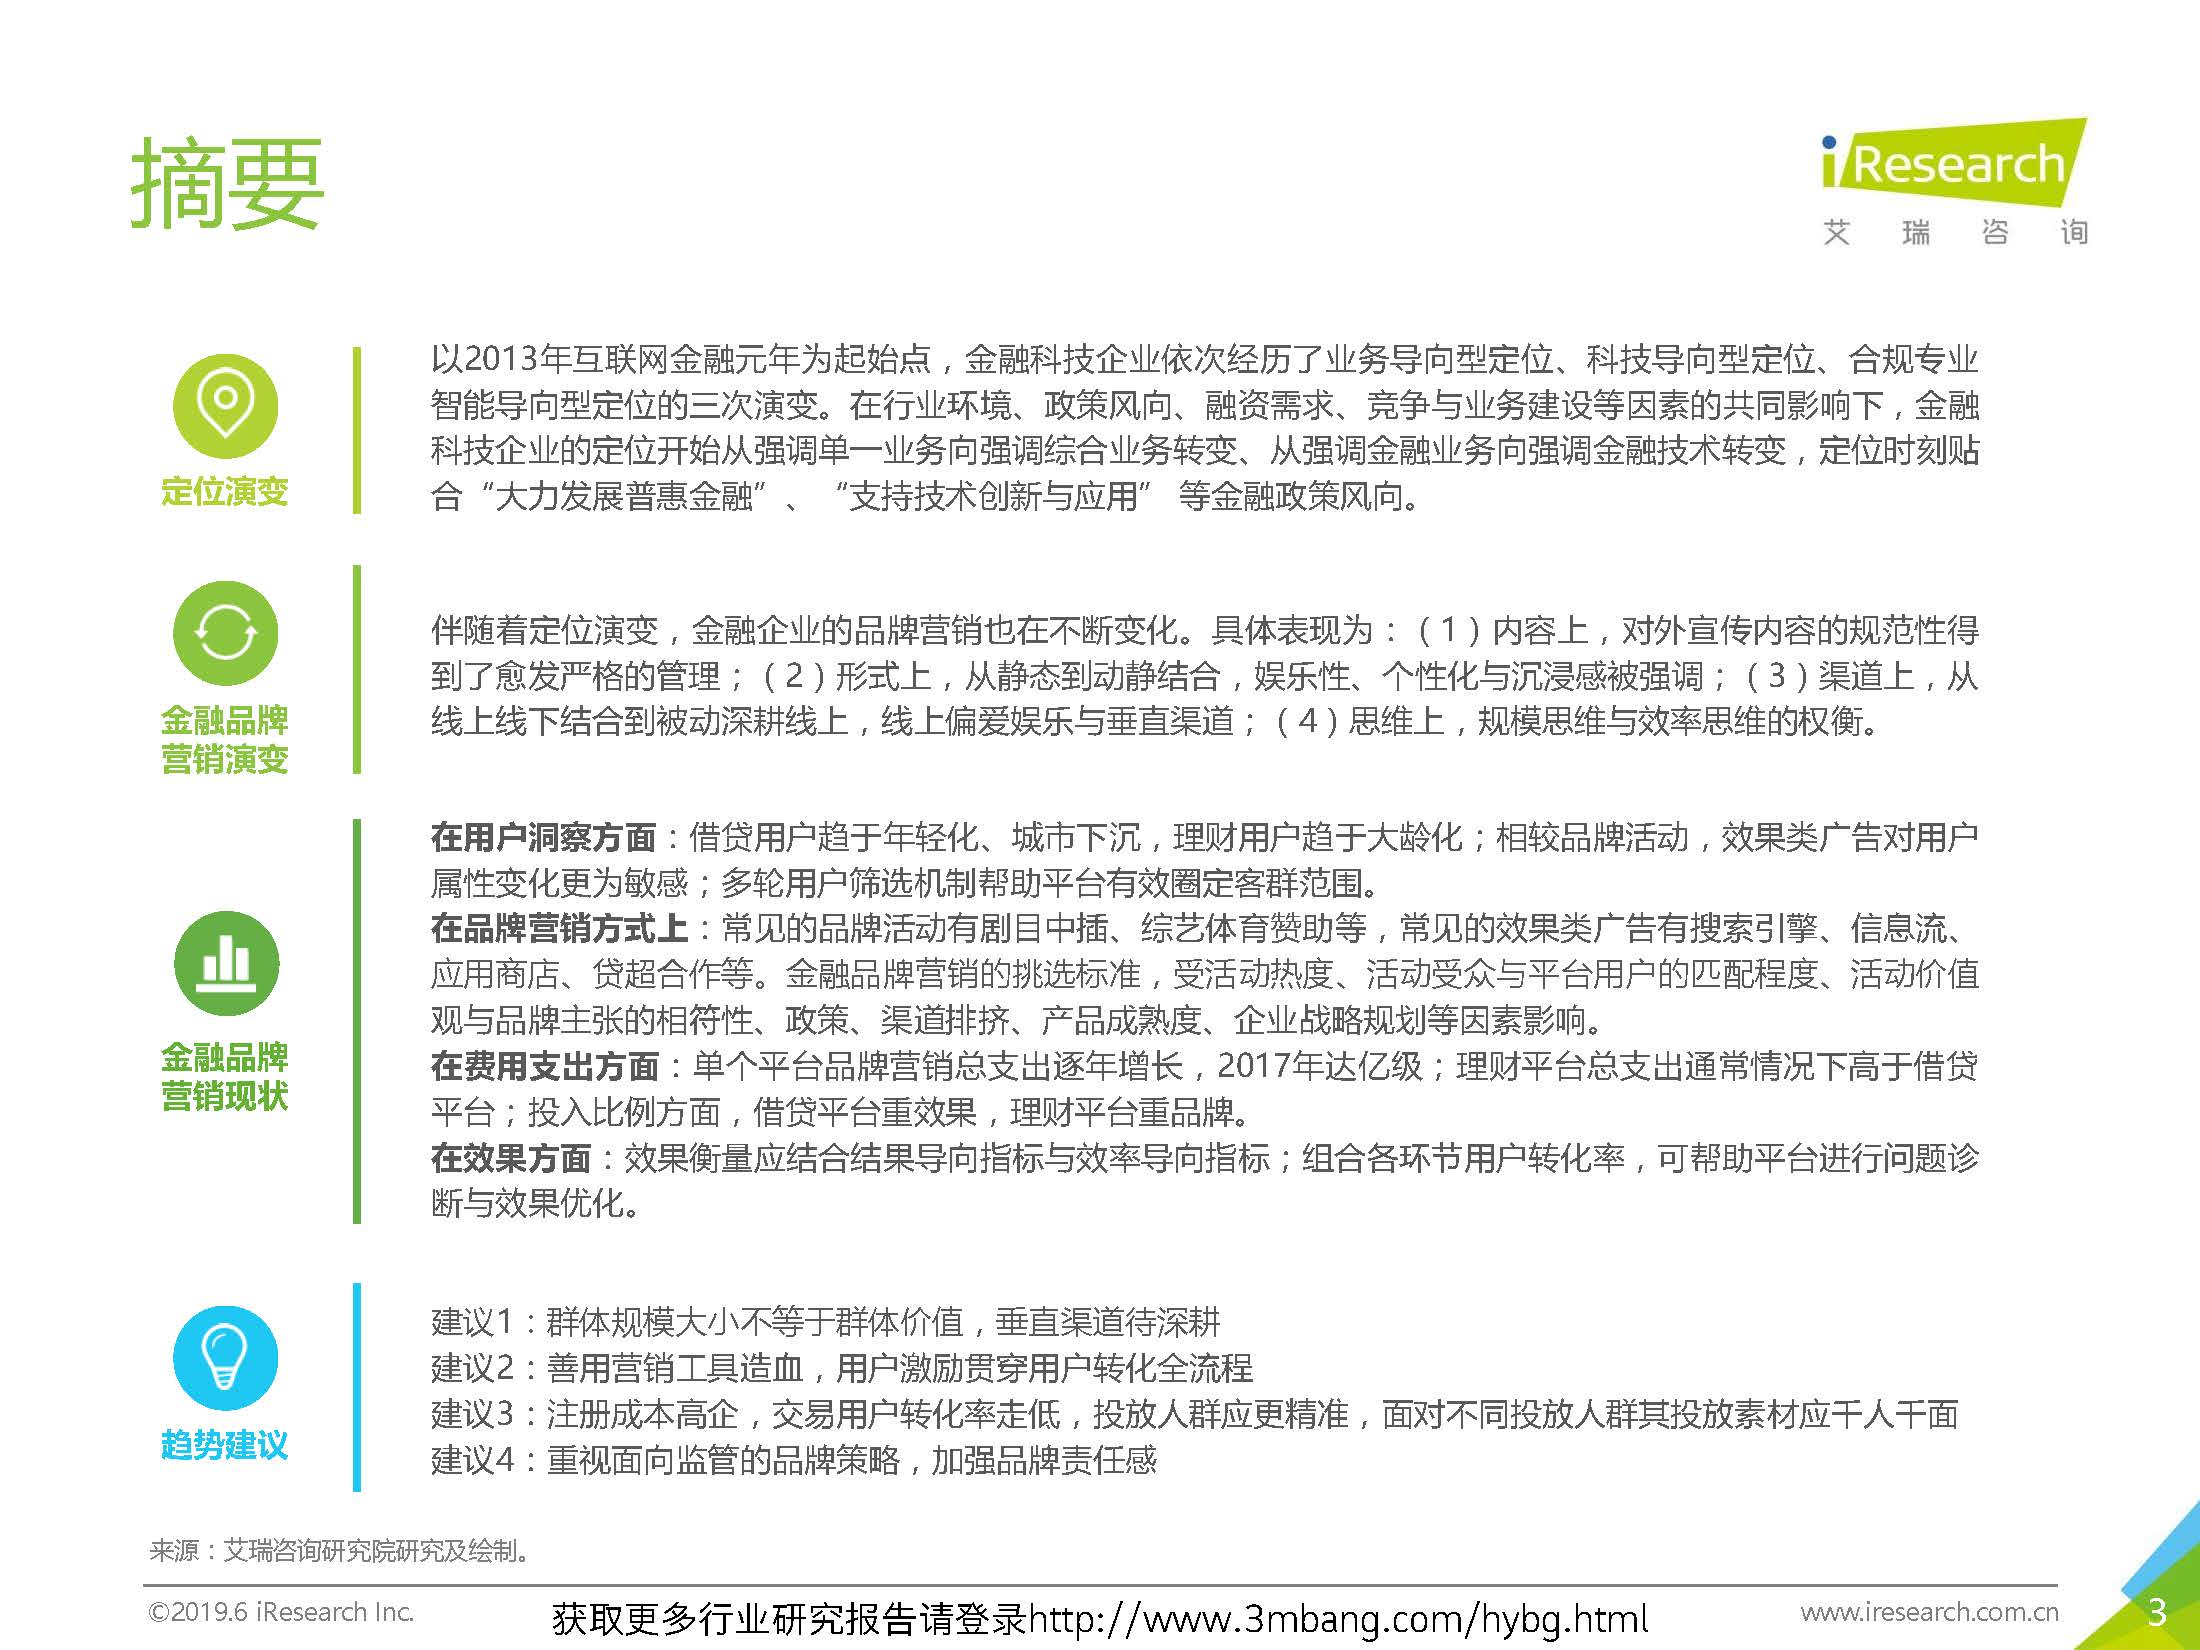 艾瑞：2019年-静待惊蛰-中国金融科技企业品牌营销研究报告(37页)_页面_03.jpg